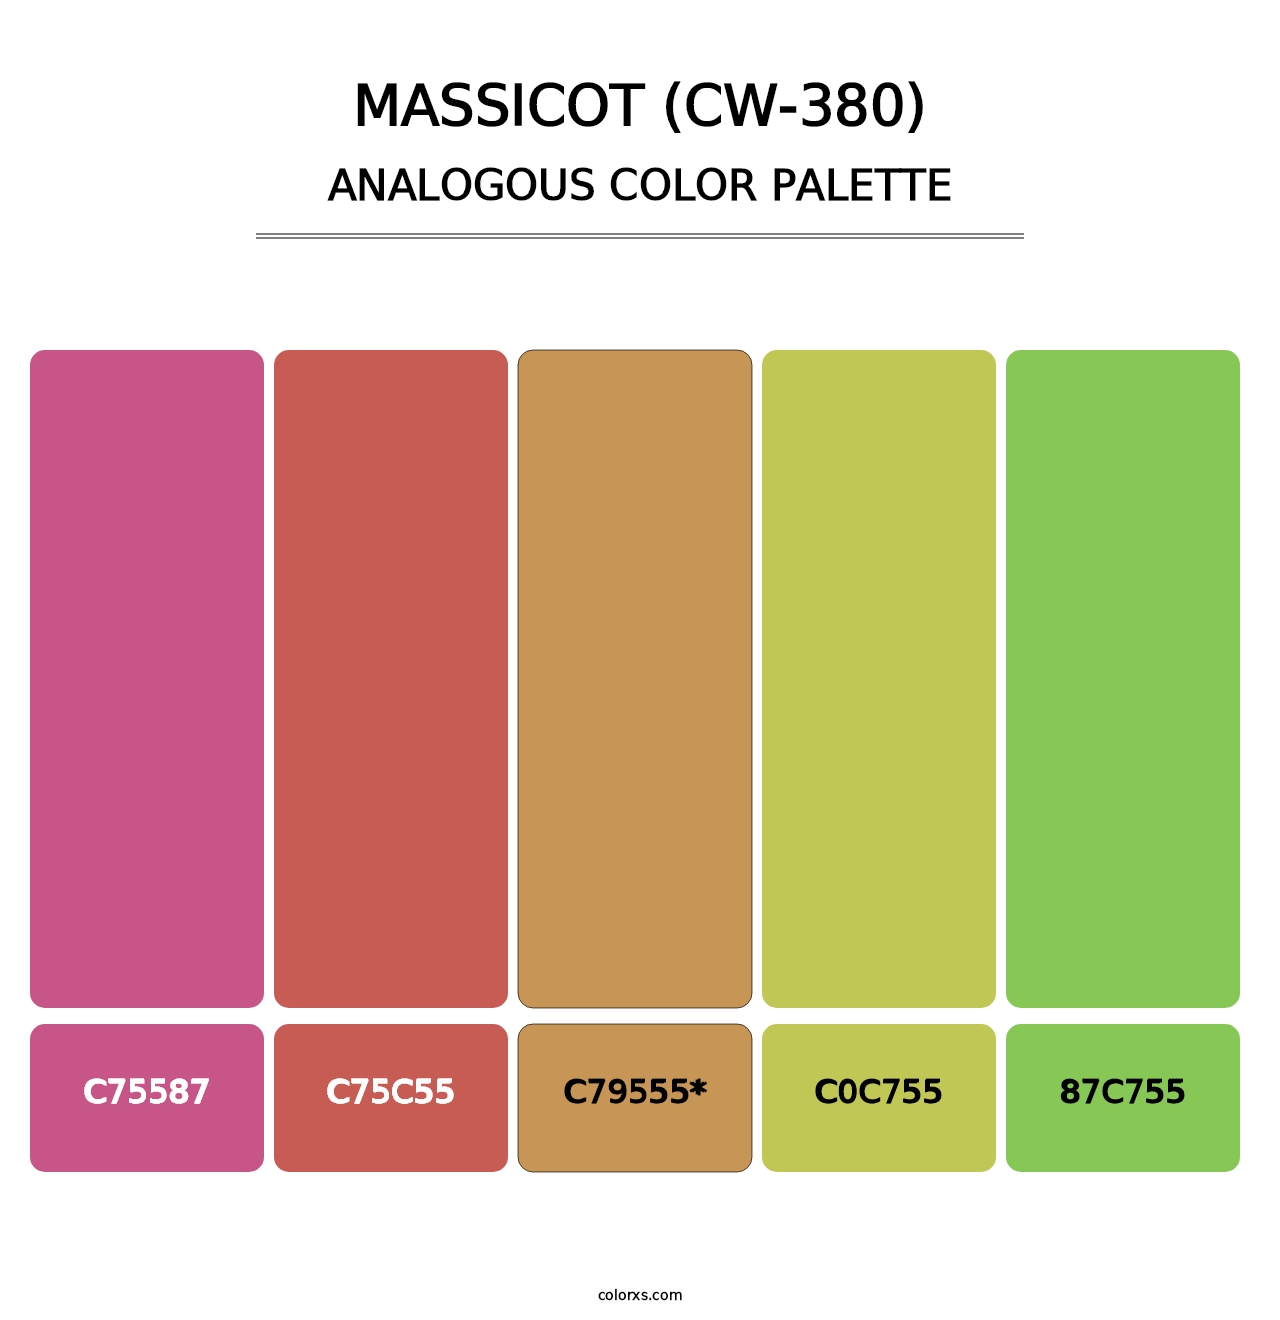 Massicot (CW-380) - Analogous Color Palette